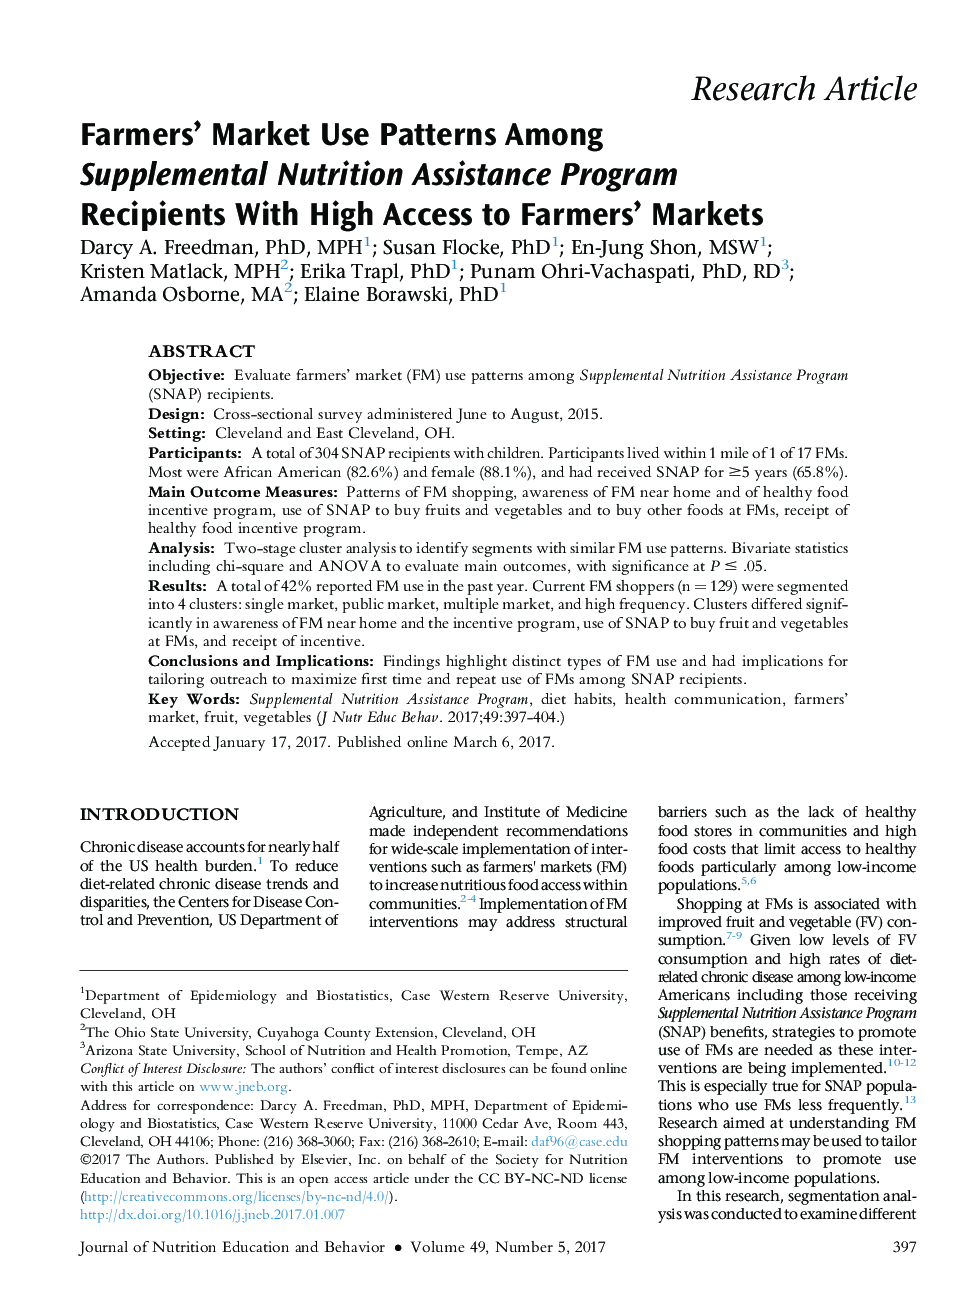 الگوهای استفاده از بازار مصرف کنندگان کشاورزان در میان دریافت کنندگان برنامه های کمک غذایی مؤثر با دسترسی های بالا به بازارهای کشاورزان 